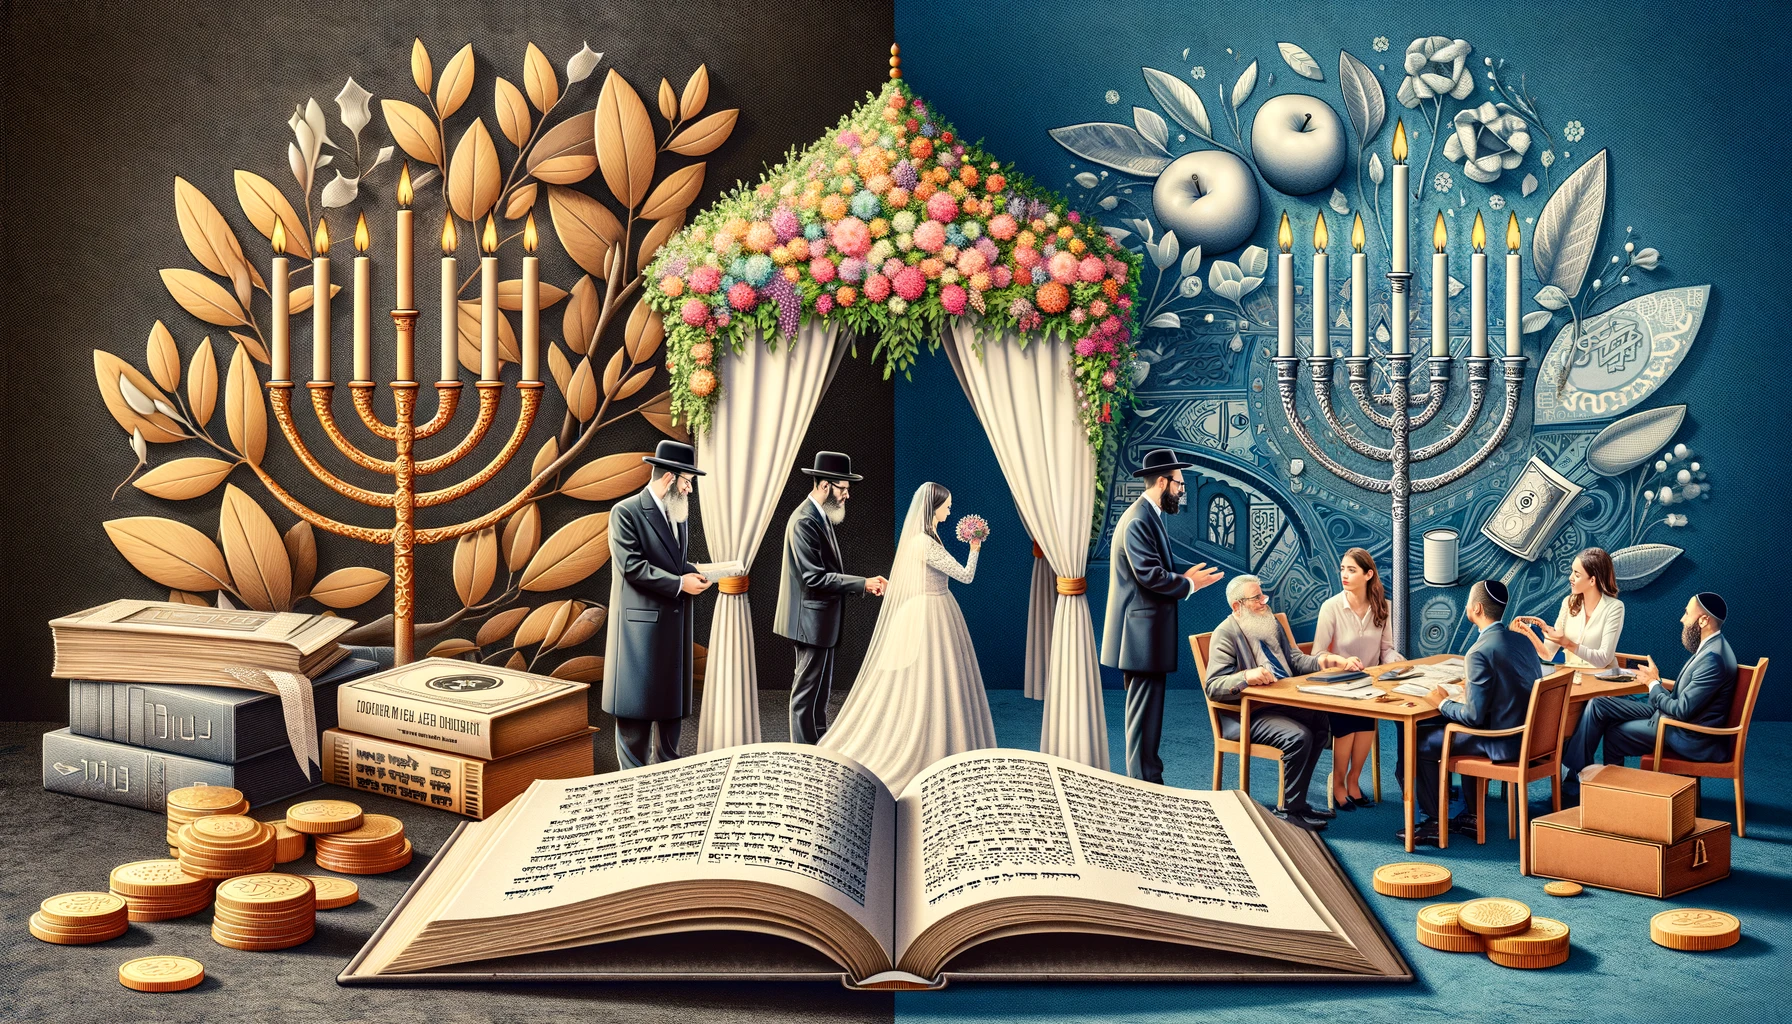 ユダヤ文化の結婚と金銭管理のテーマを象徴的に表現し、16:9の形式